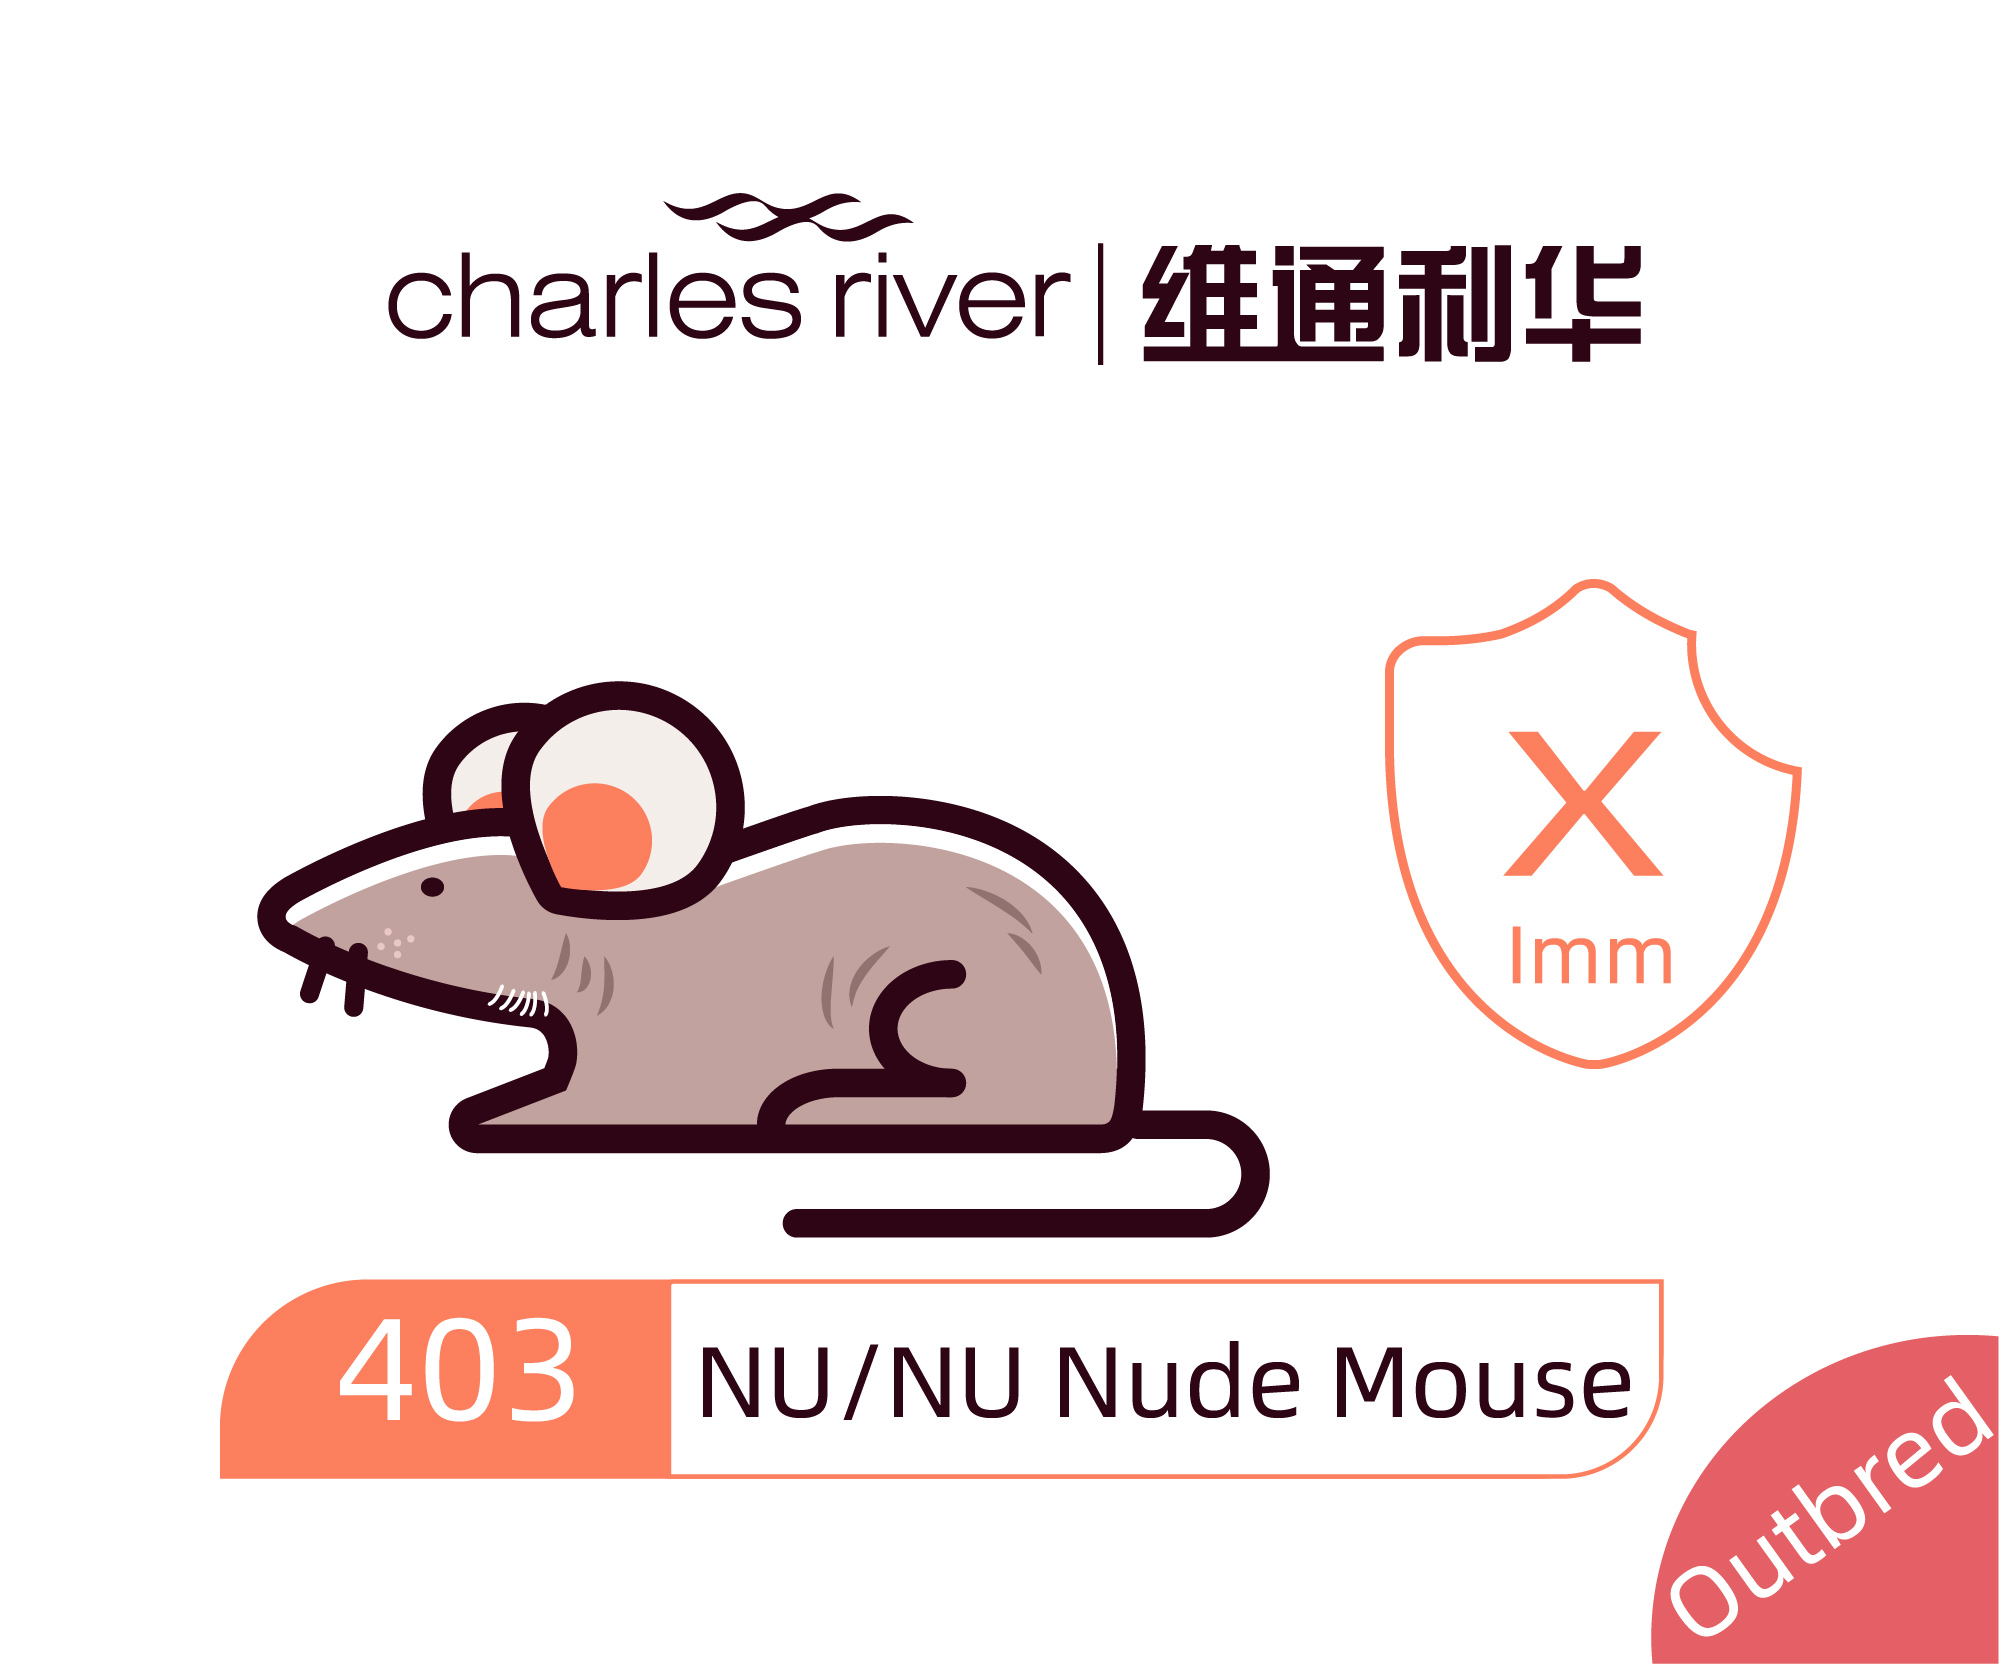 维通利华 NU/NU 裸鼠 SPF级 裸小鼠 NUNU